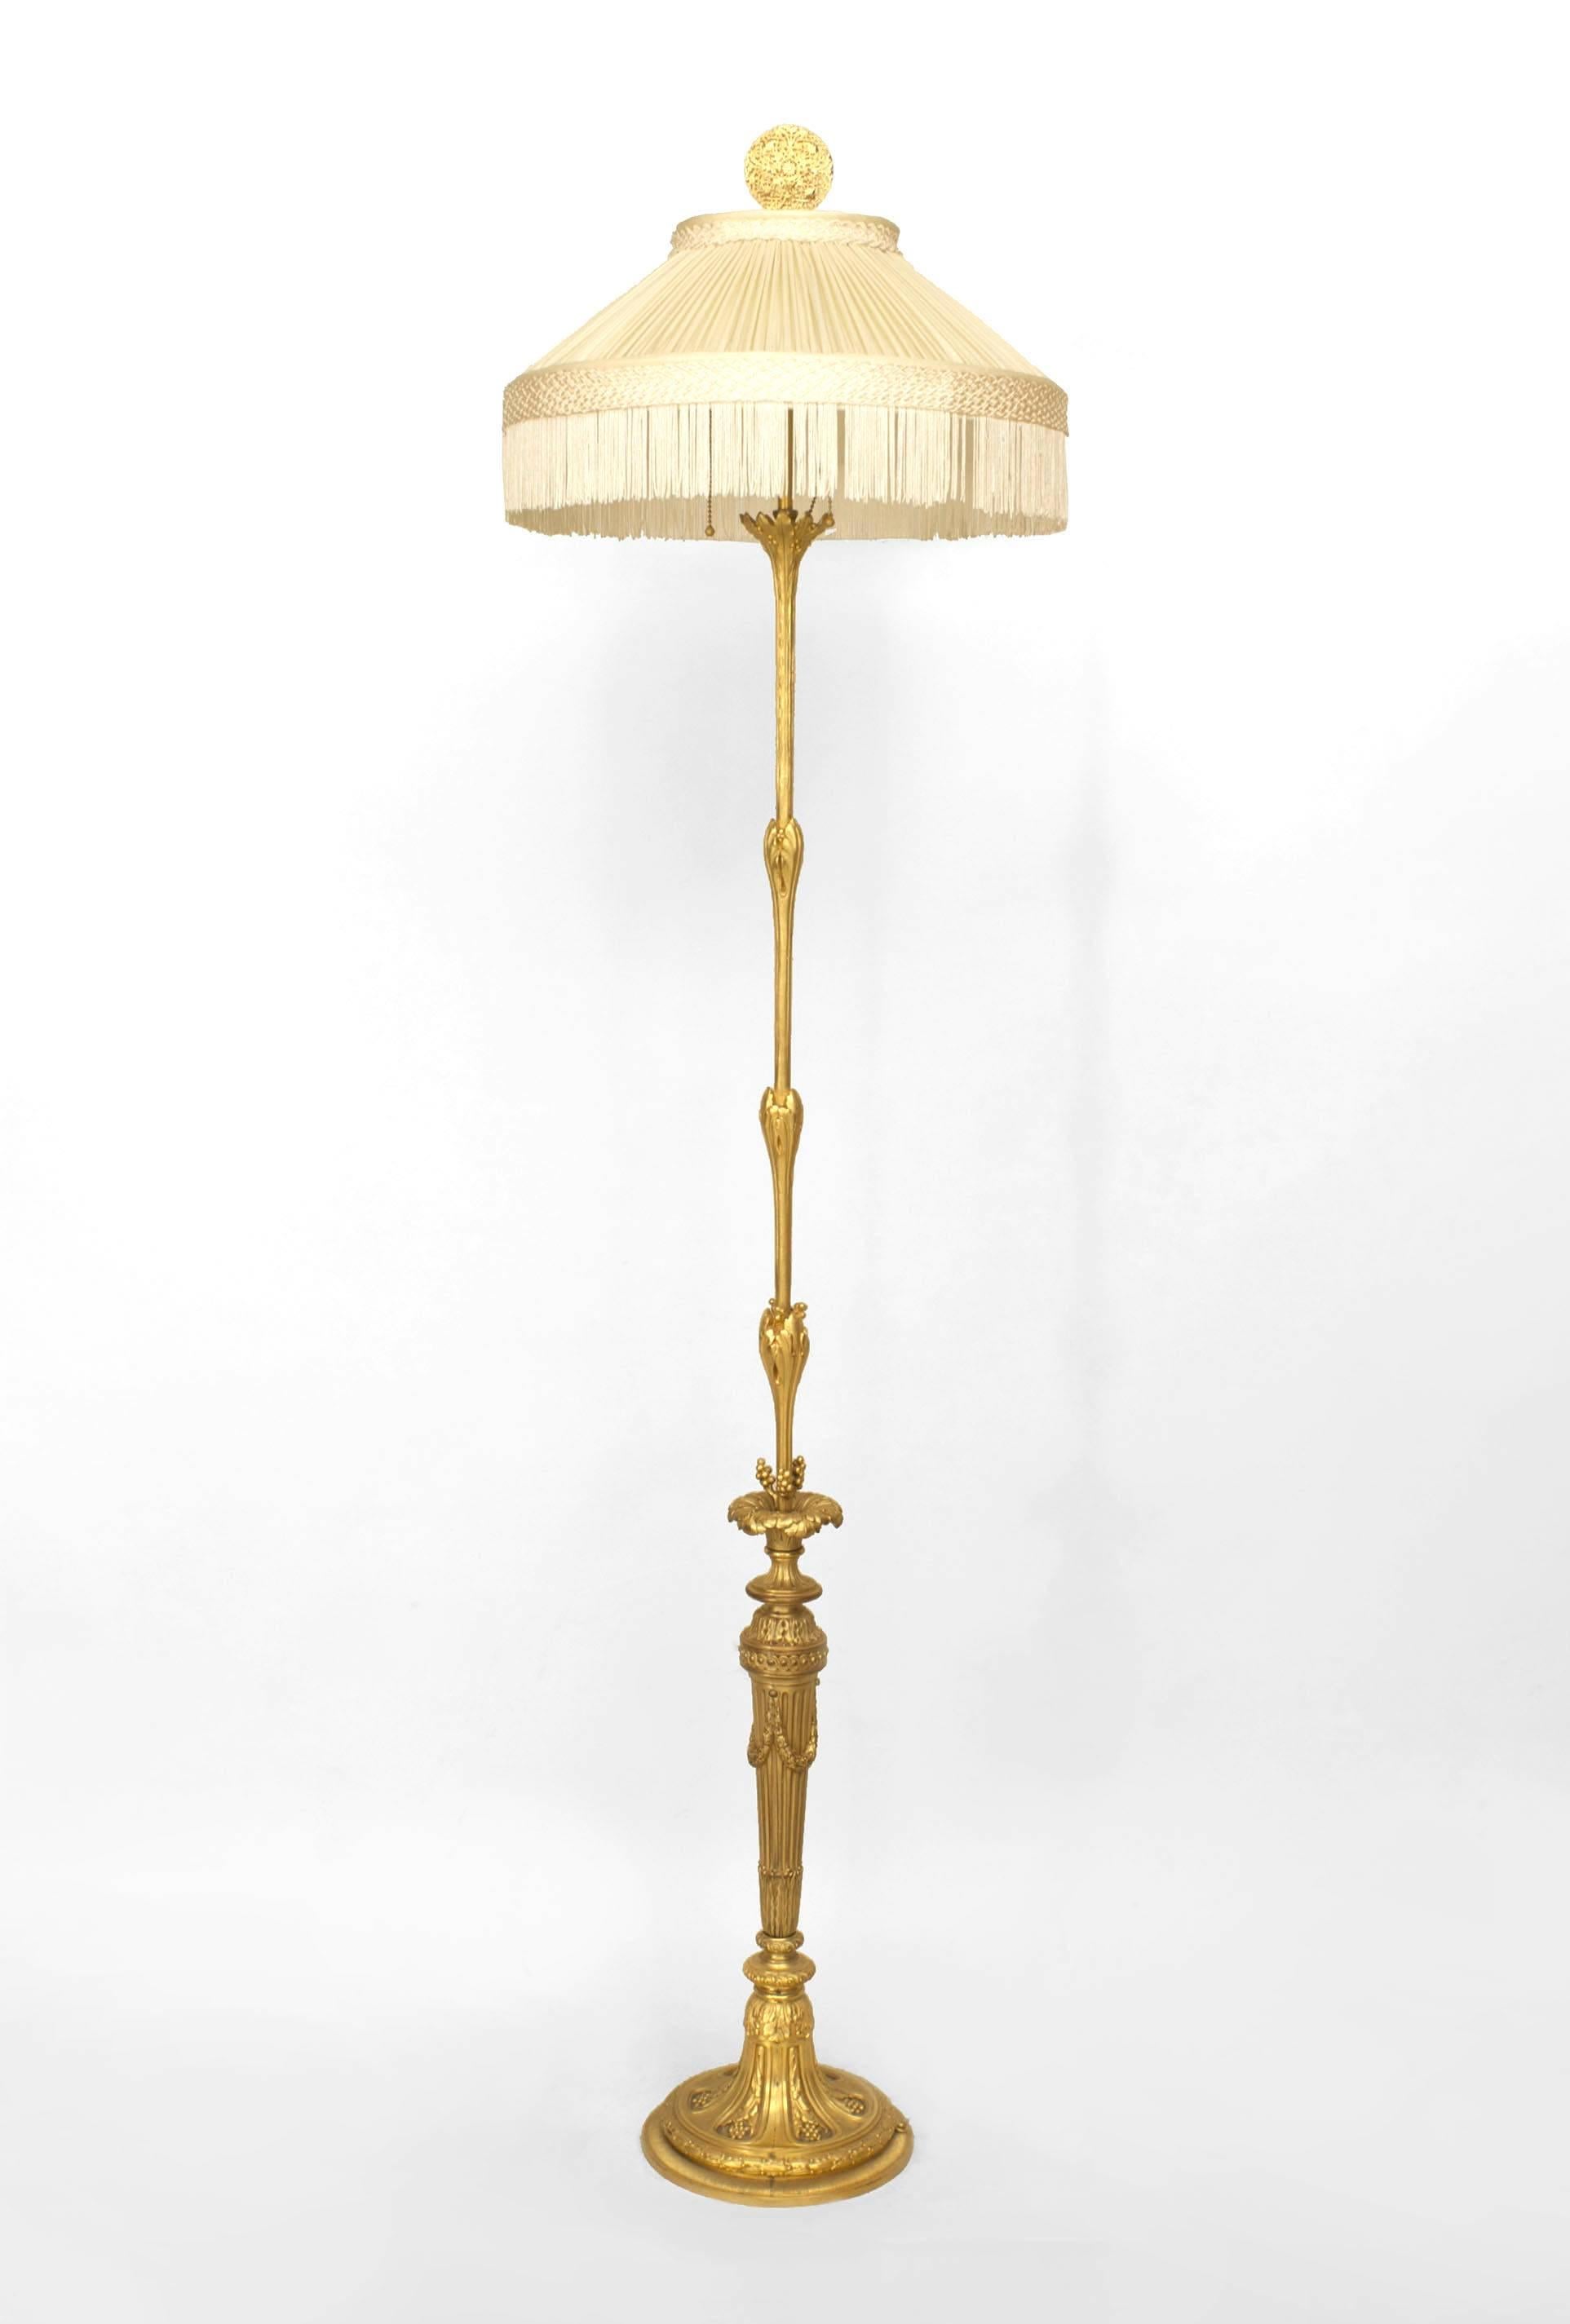 Französische Stehlampe aus vergoldeter Bronze im Louis-XVI-Stil (20. Jh.), getragen von einem runden Sockel mit einem Schaft mit Blumenmuster.
